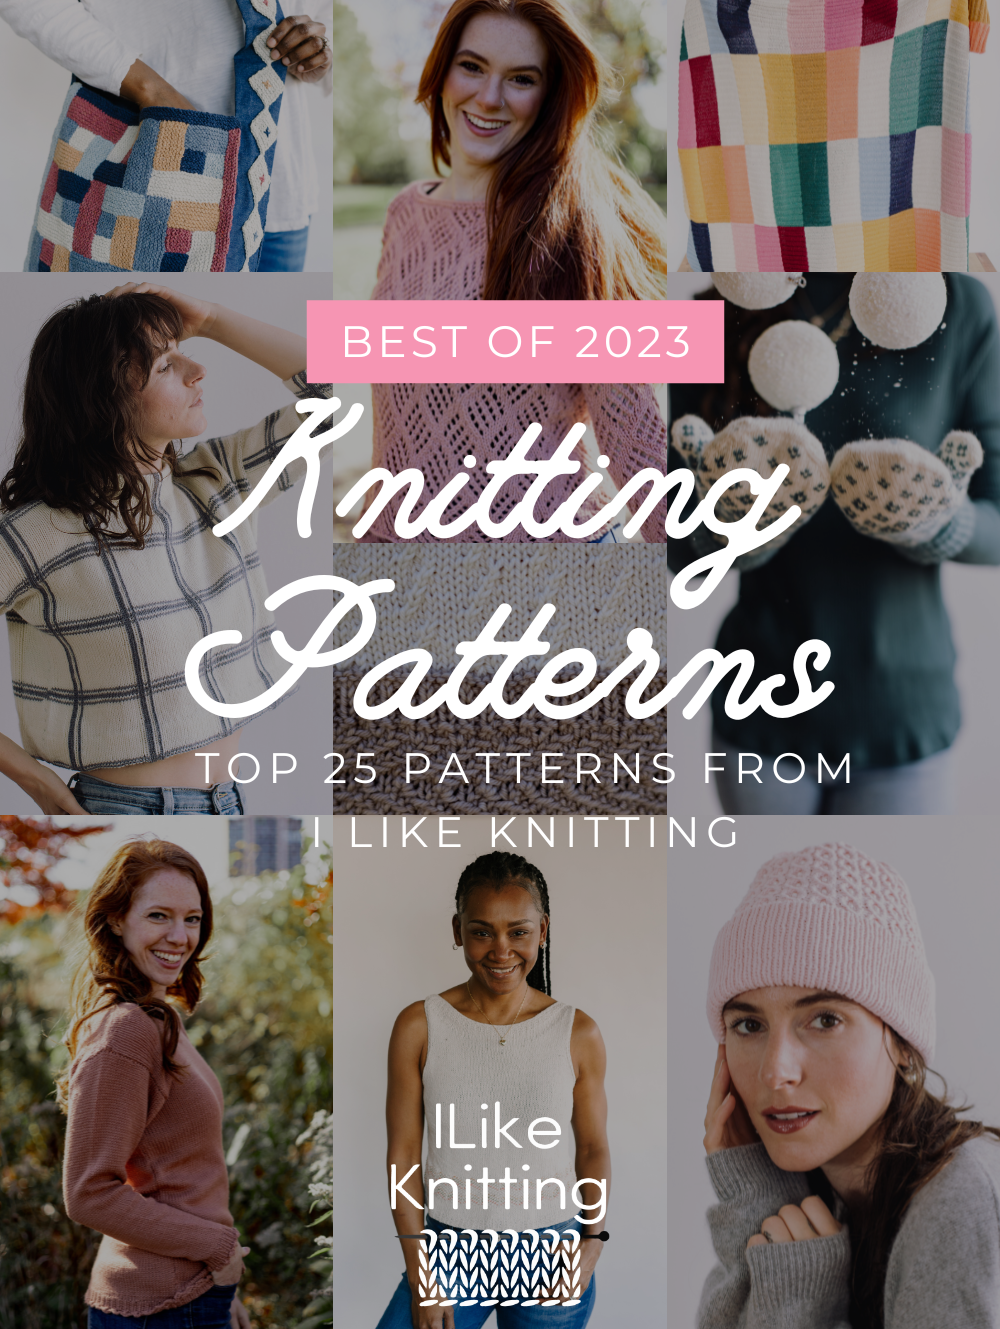 New Knitting Books for Winter 2022 - I Like Knitting